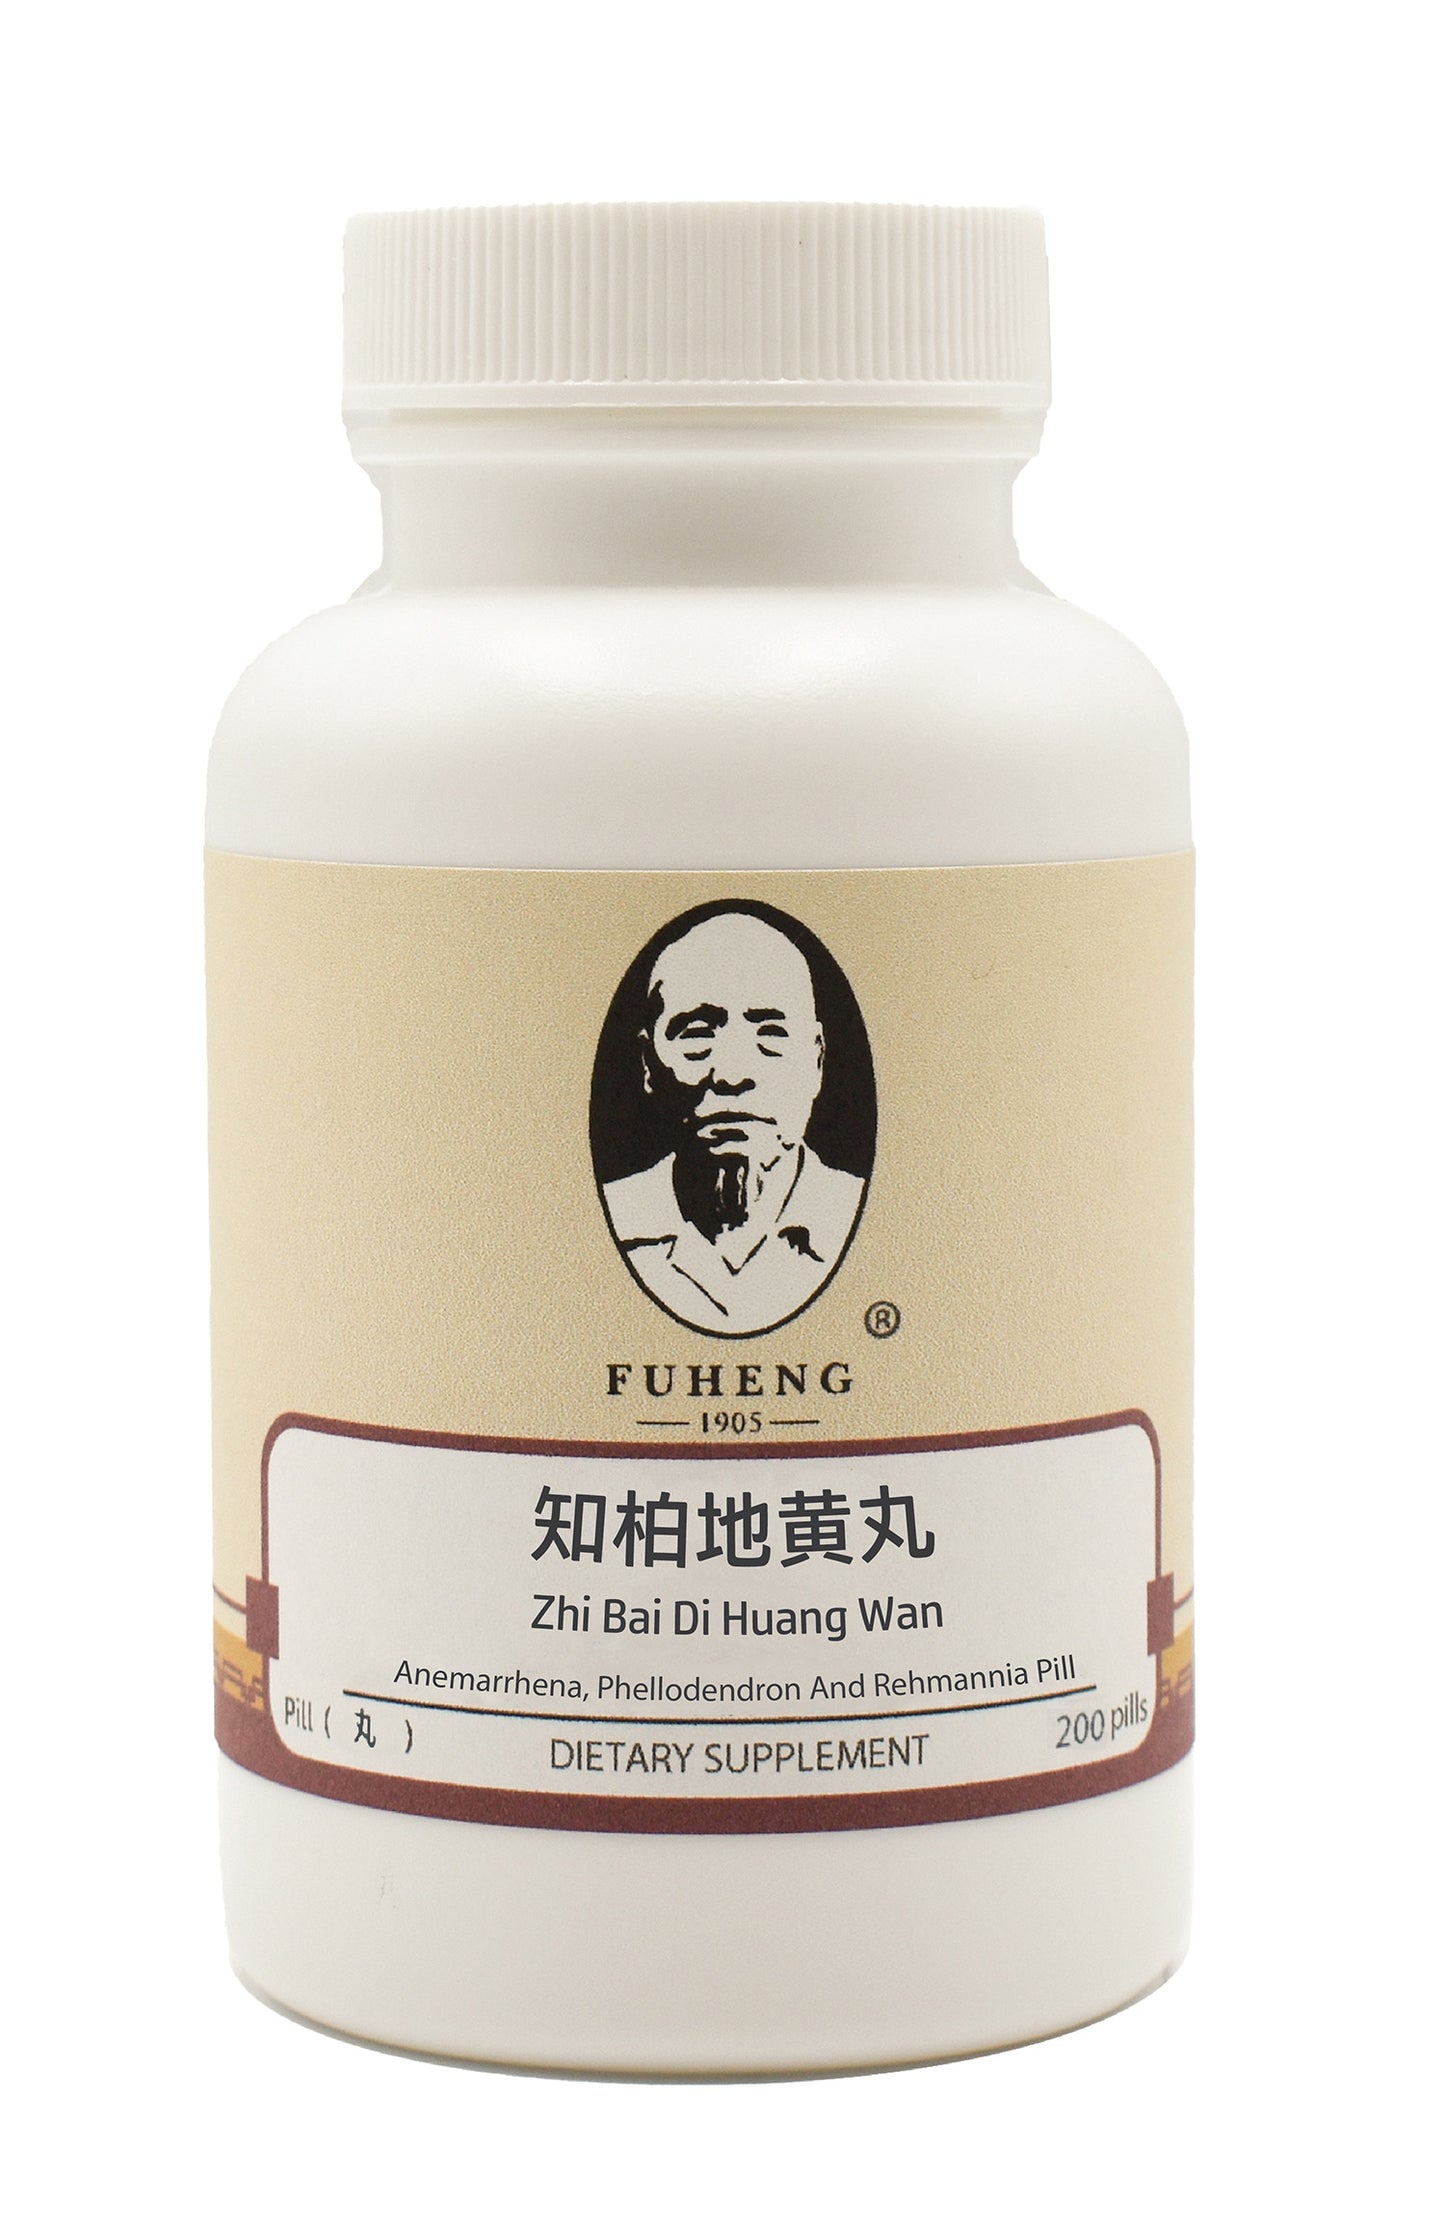 Zhi Bai Di Huang Wan - 知柏地黄丸 - 丸剂 - Anemarrhena, Phellodendron And Rehmannia Pill - FUHENG福恒 - Since 1905 - 200 pills